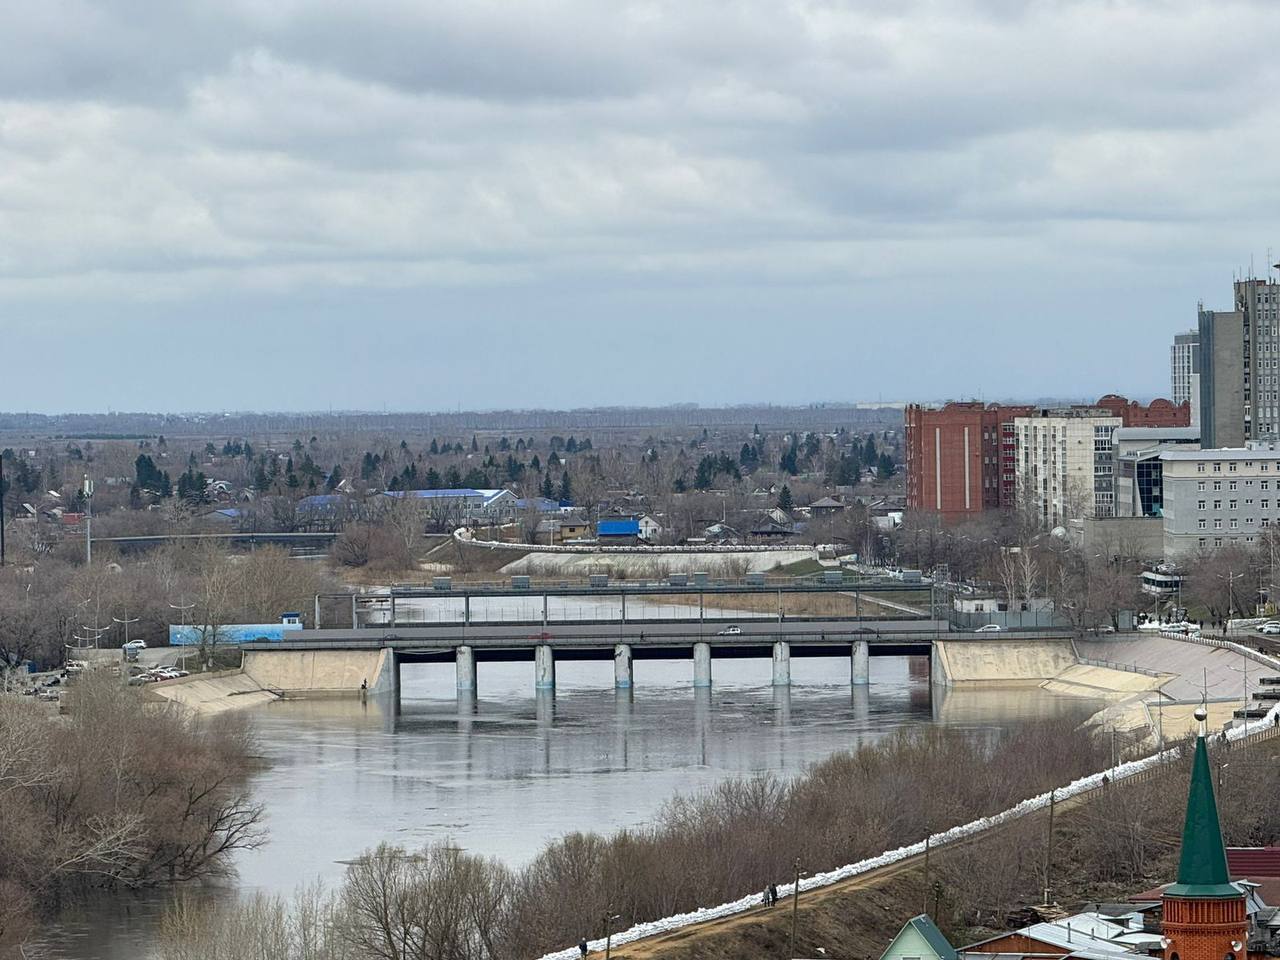 Miasta schodzą pod wodę przy dźwięku syren: ''kara niebios'' w Rosji jest pokazywana w Internecie. Zdjęcia i filmy